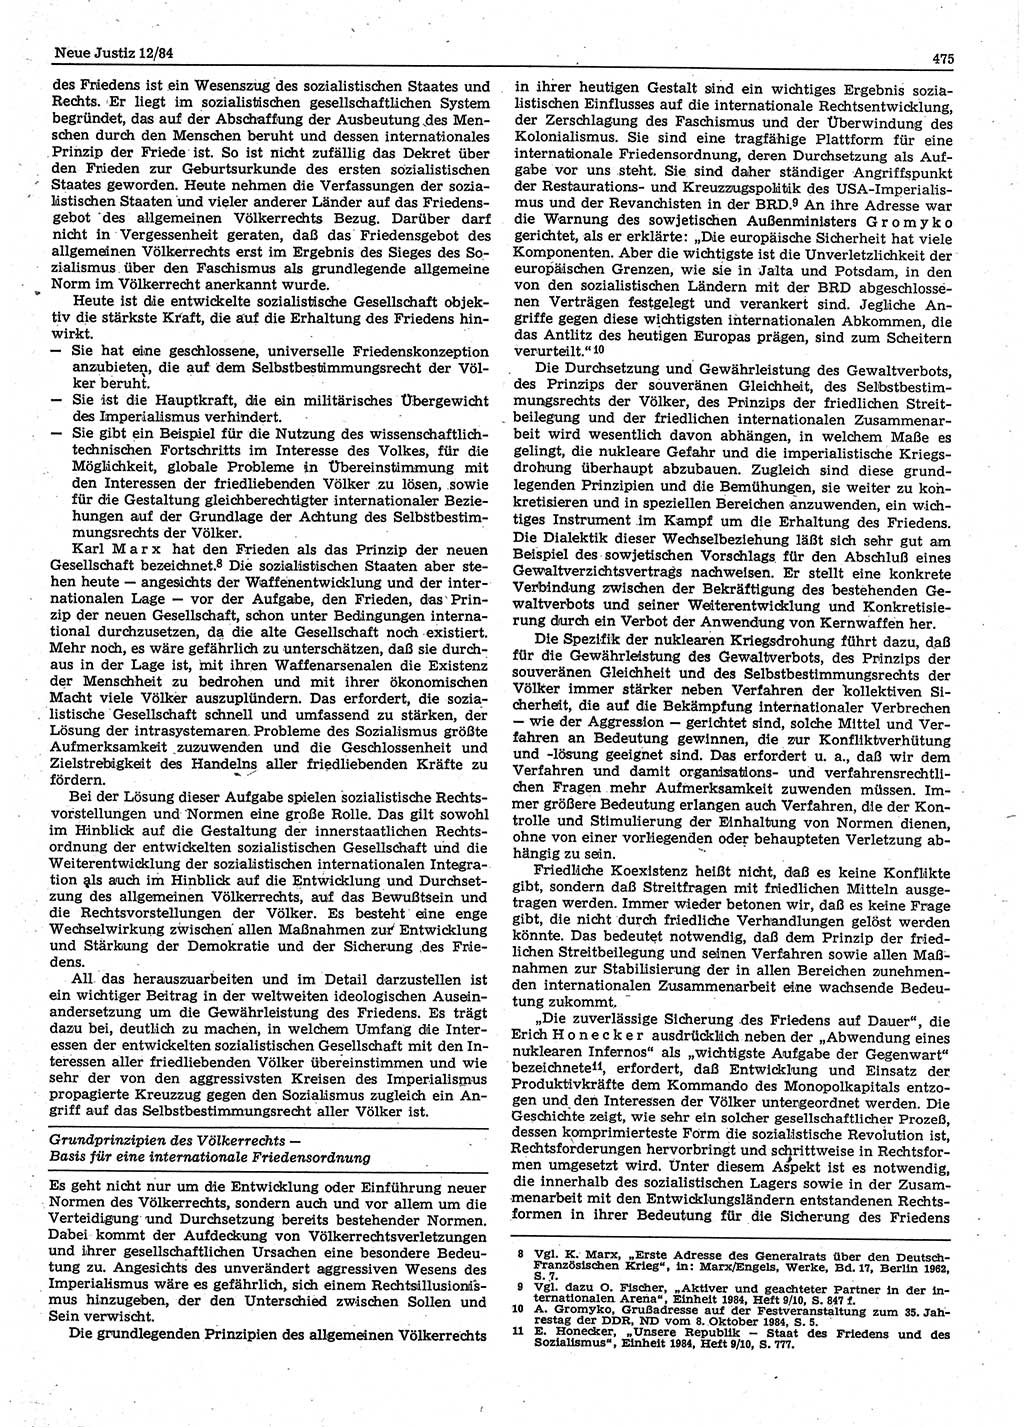 Neue Justiz (NJ), Zeitschrift für sozialistisches Recht und Gesetzlichkeit [Deutsche Demokratische Republik (DDR)], 38. Jahrgang 1984, Seite 475 (NJ DDR 1984, S. 475)